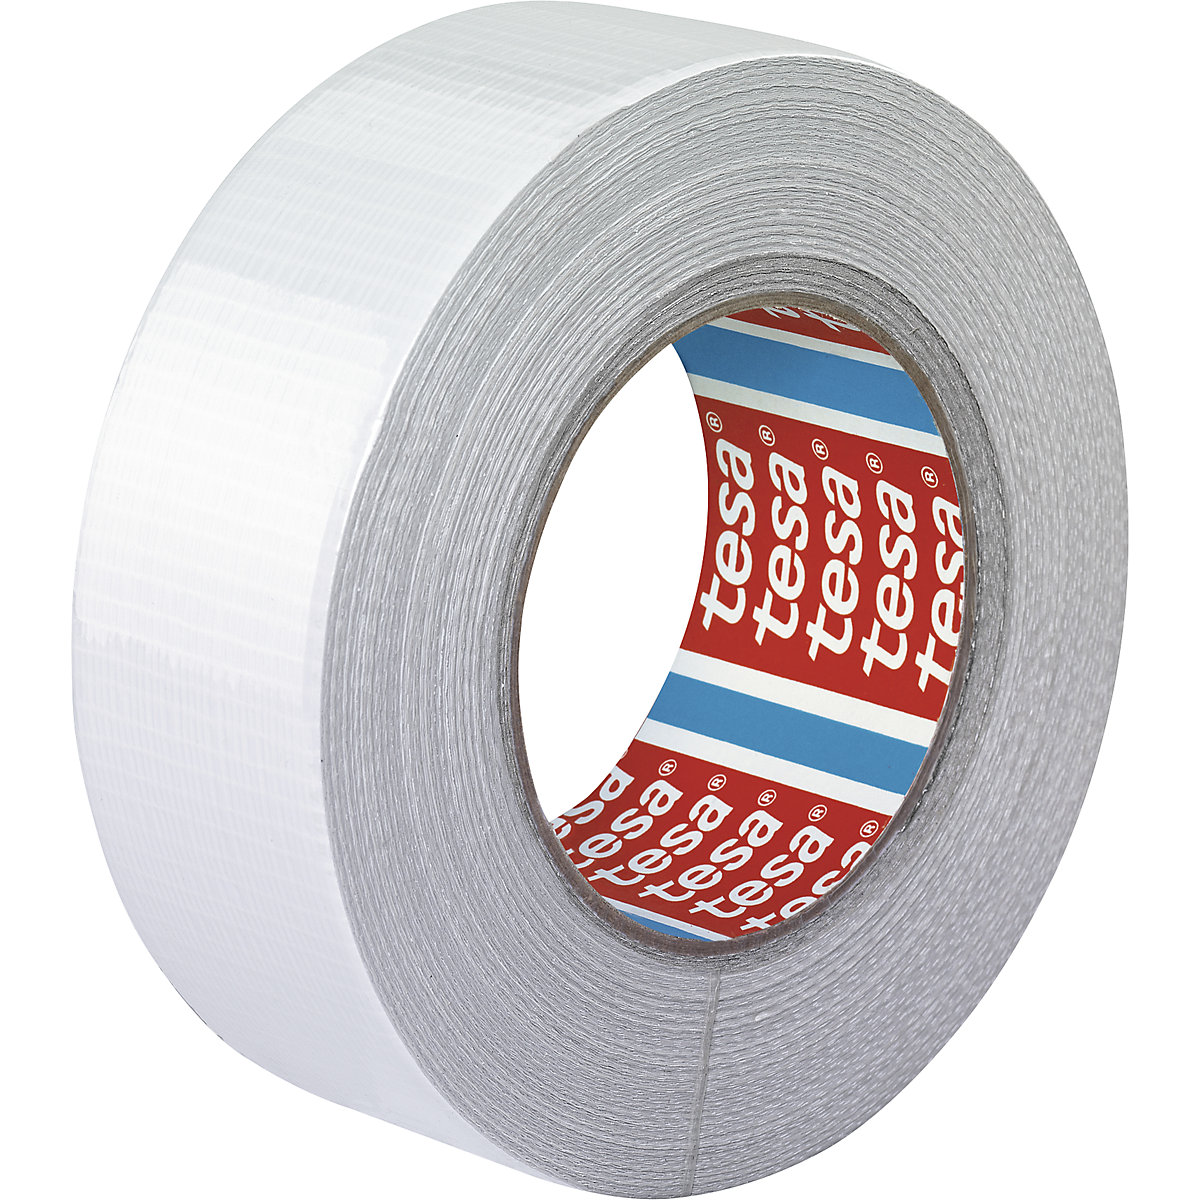 Traka od tkanine – tesa, platnena traka tesa® 4662, pak. 24 role, u bijeloj boji, širina trake 48 mm-3